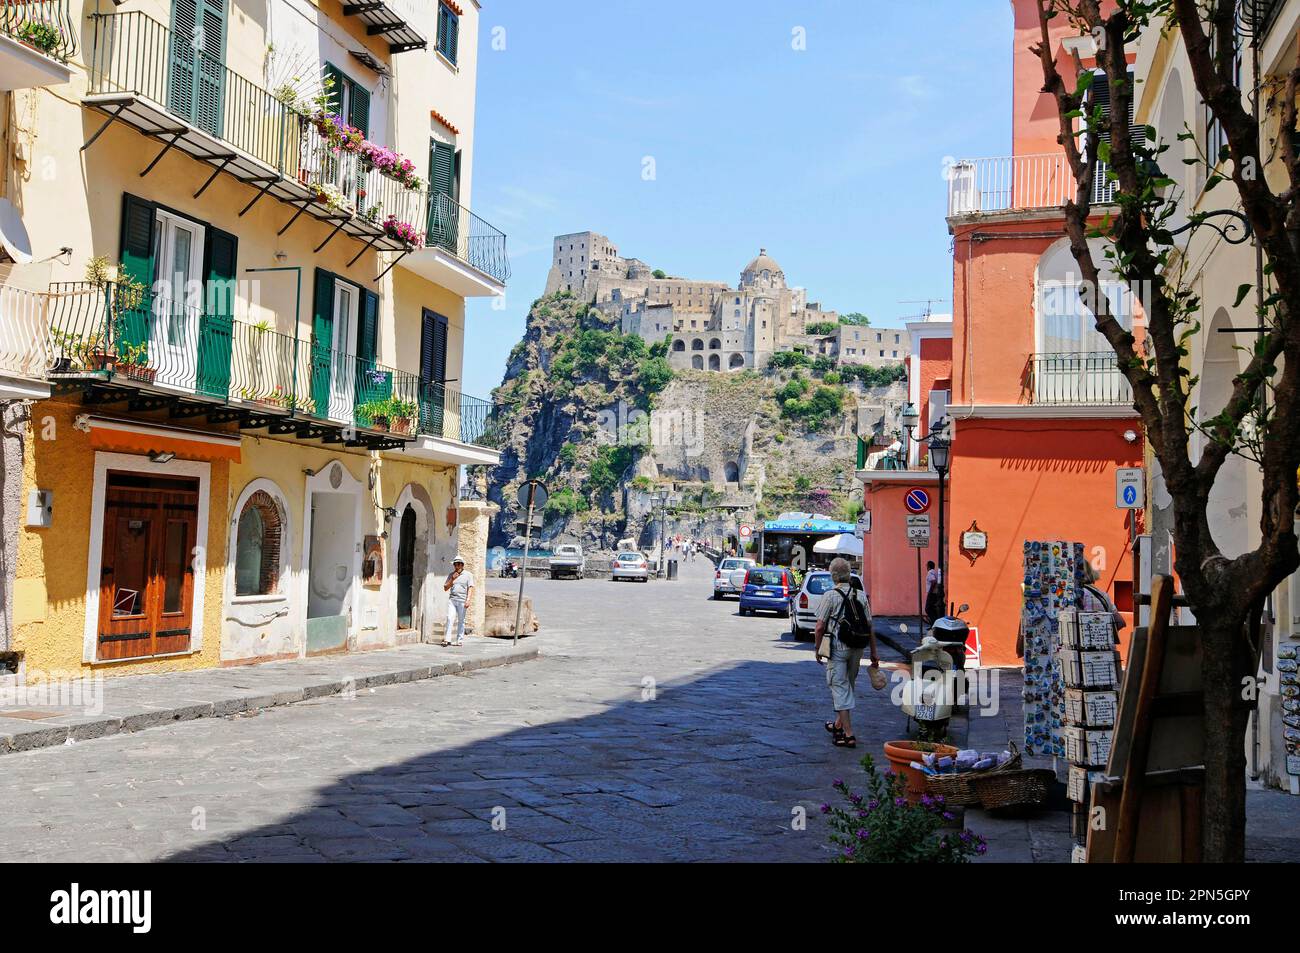 Castello Aragonese, Castello, Ponte, Isola d'Ischia, Golfo di Napoli, Campania, Italia Foto Stock